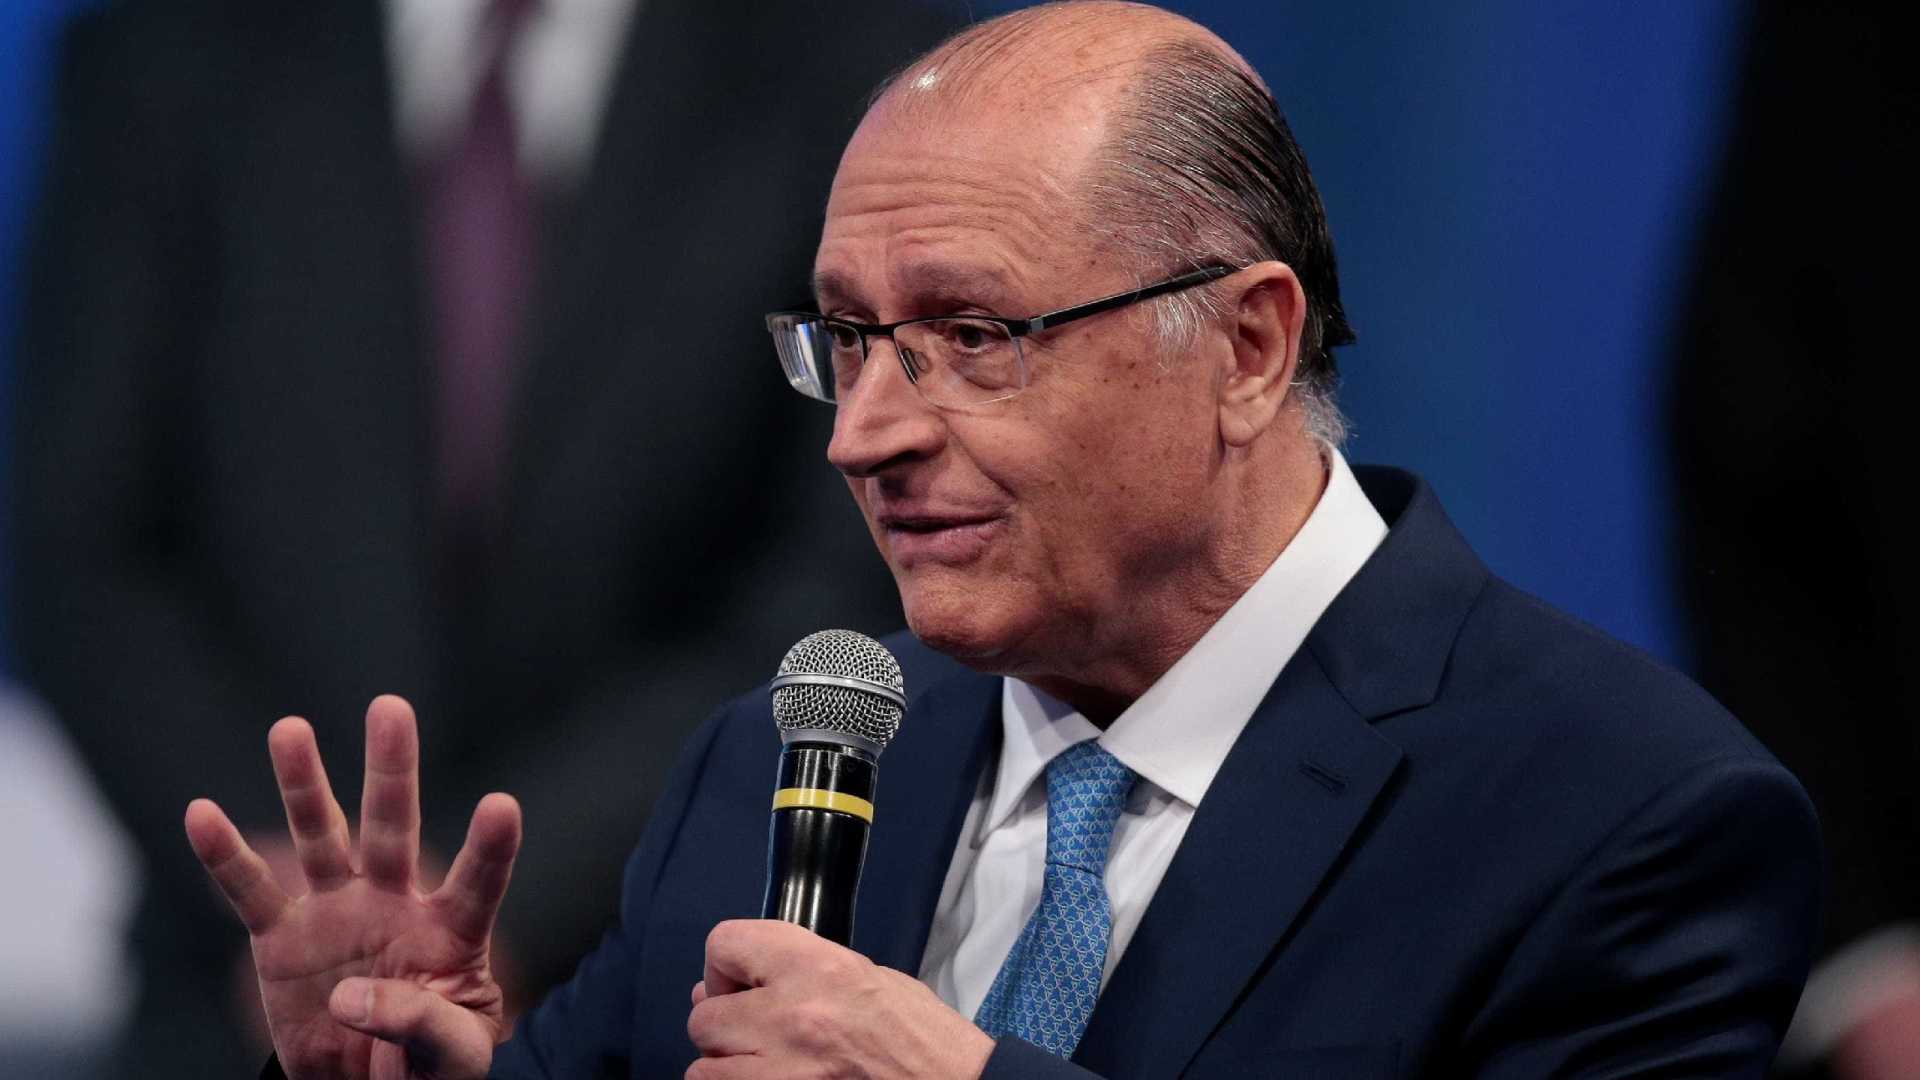 Bolsonaro é menino mimado; não aceita derrota, diz Alckmin